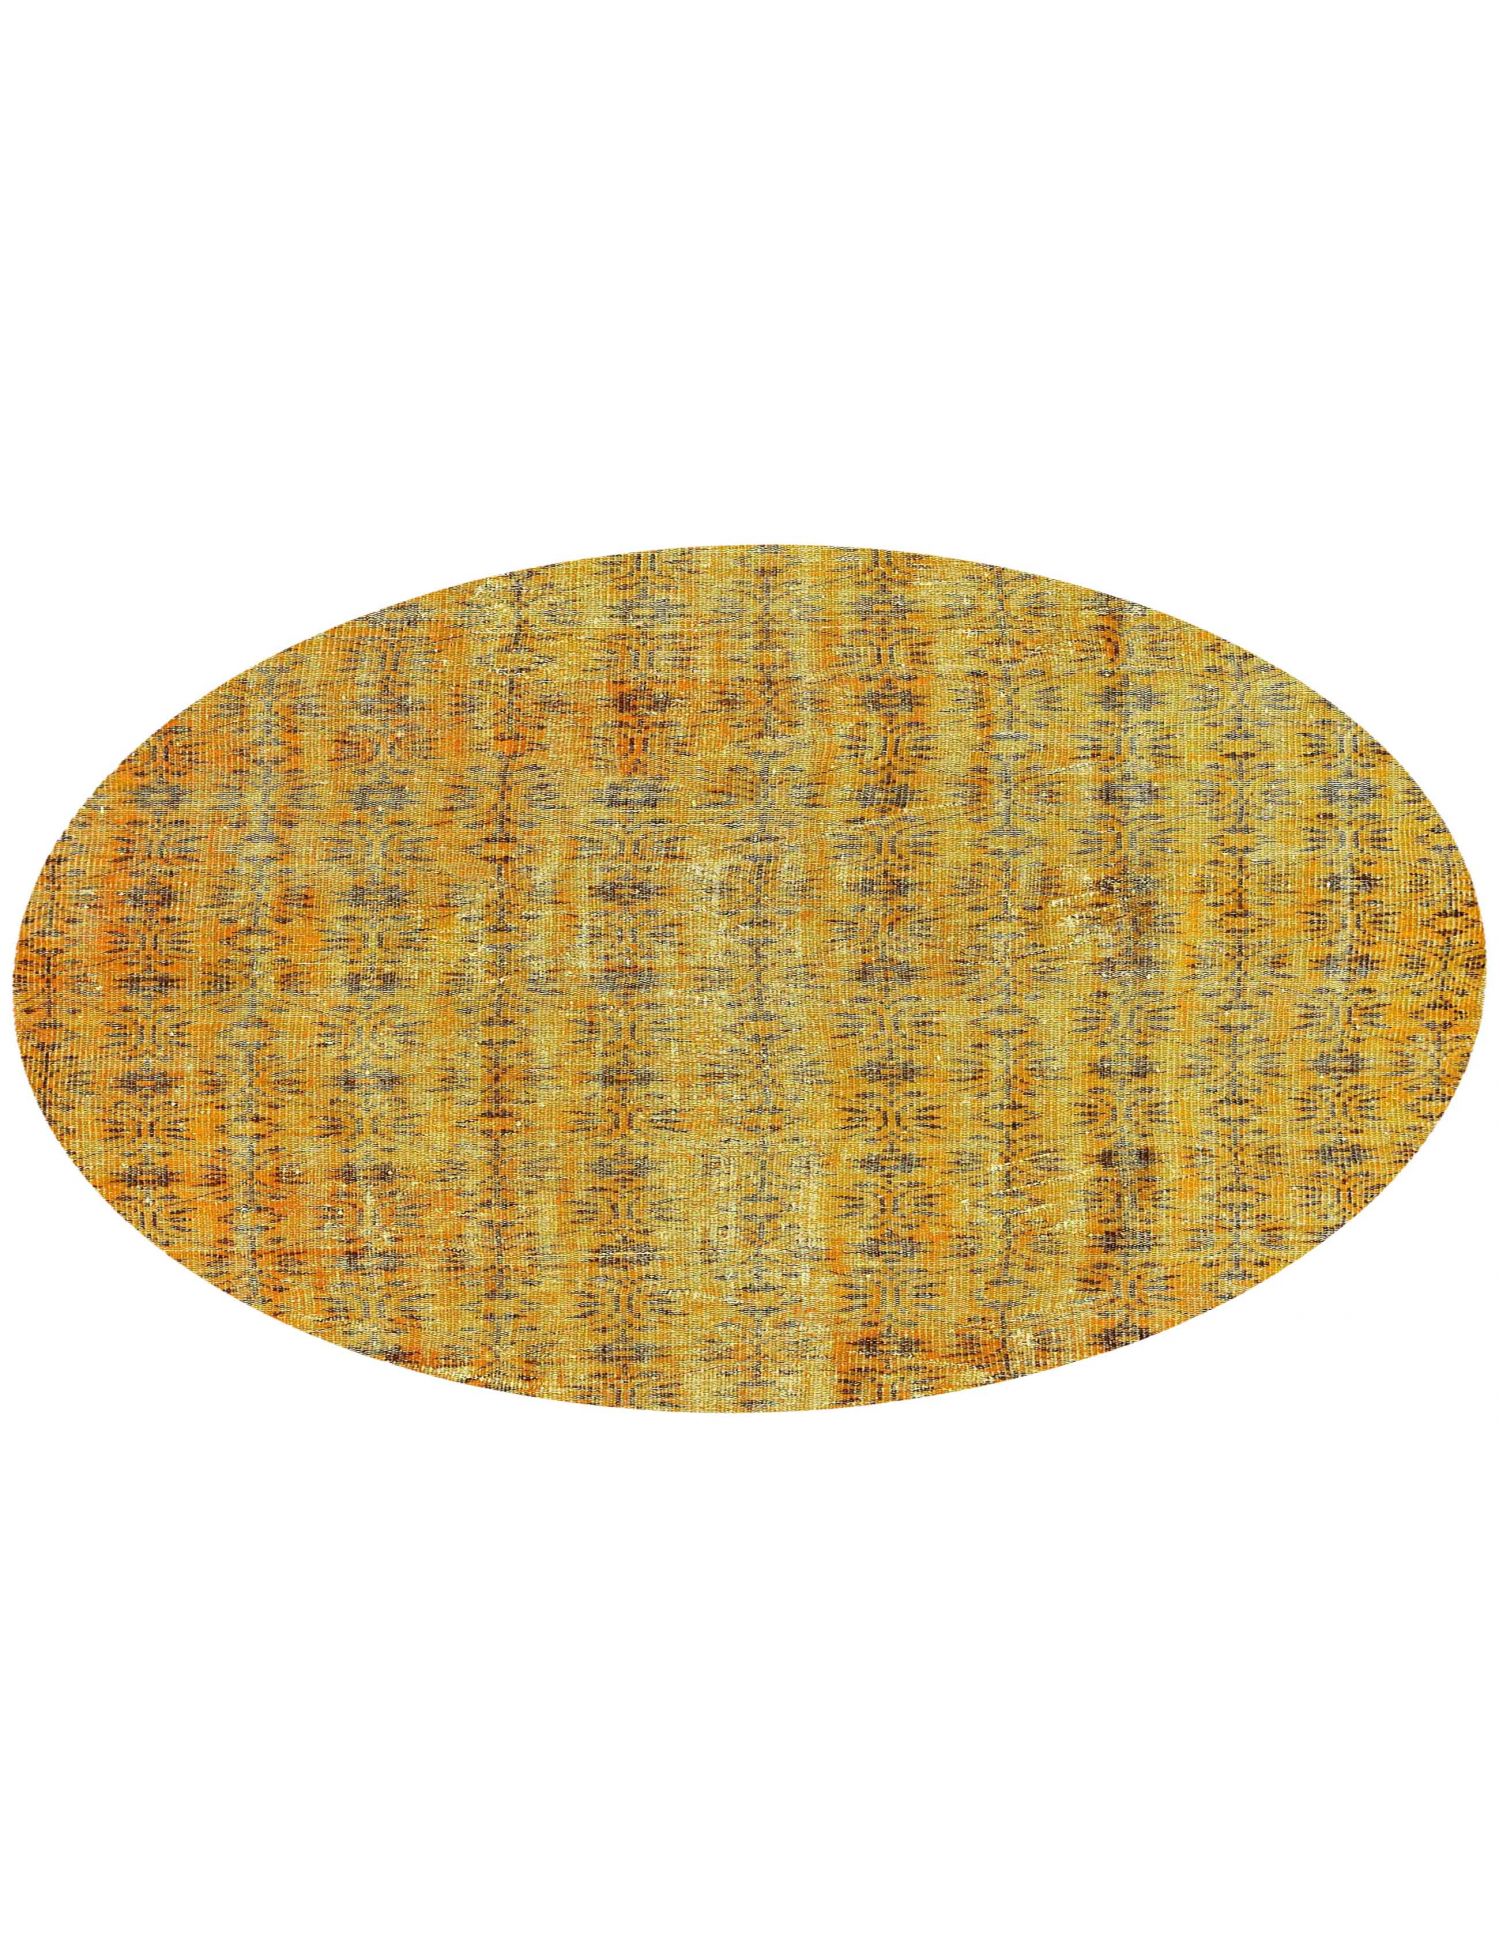 Rund Vintage Teppich  gelb <br/>181 x 181 cm